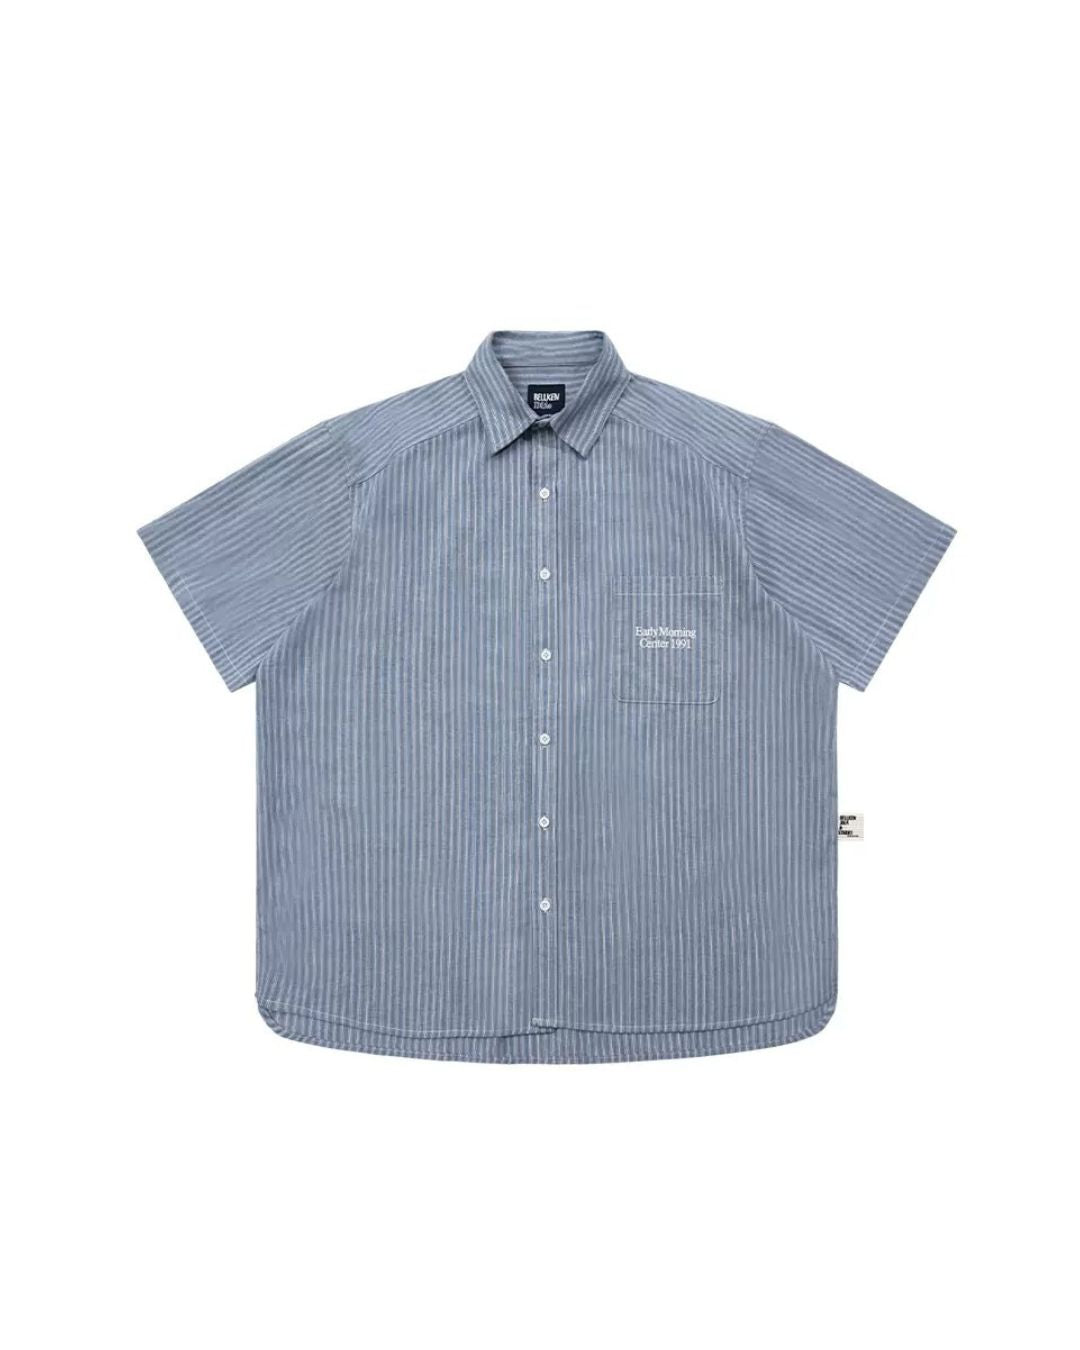 Retro Striped S/S Shirt　SS054